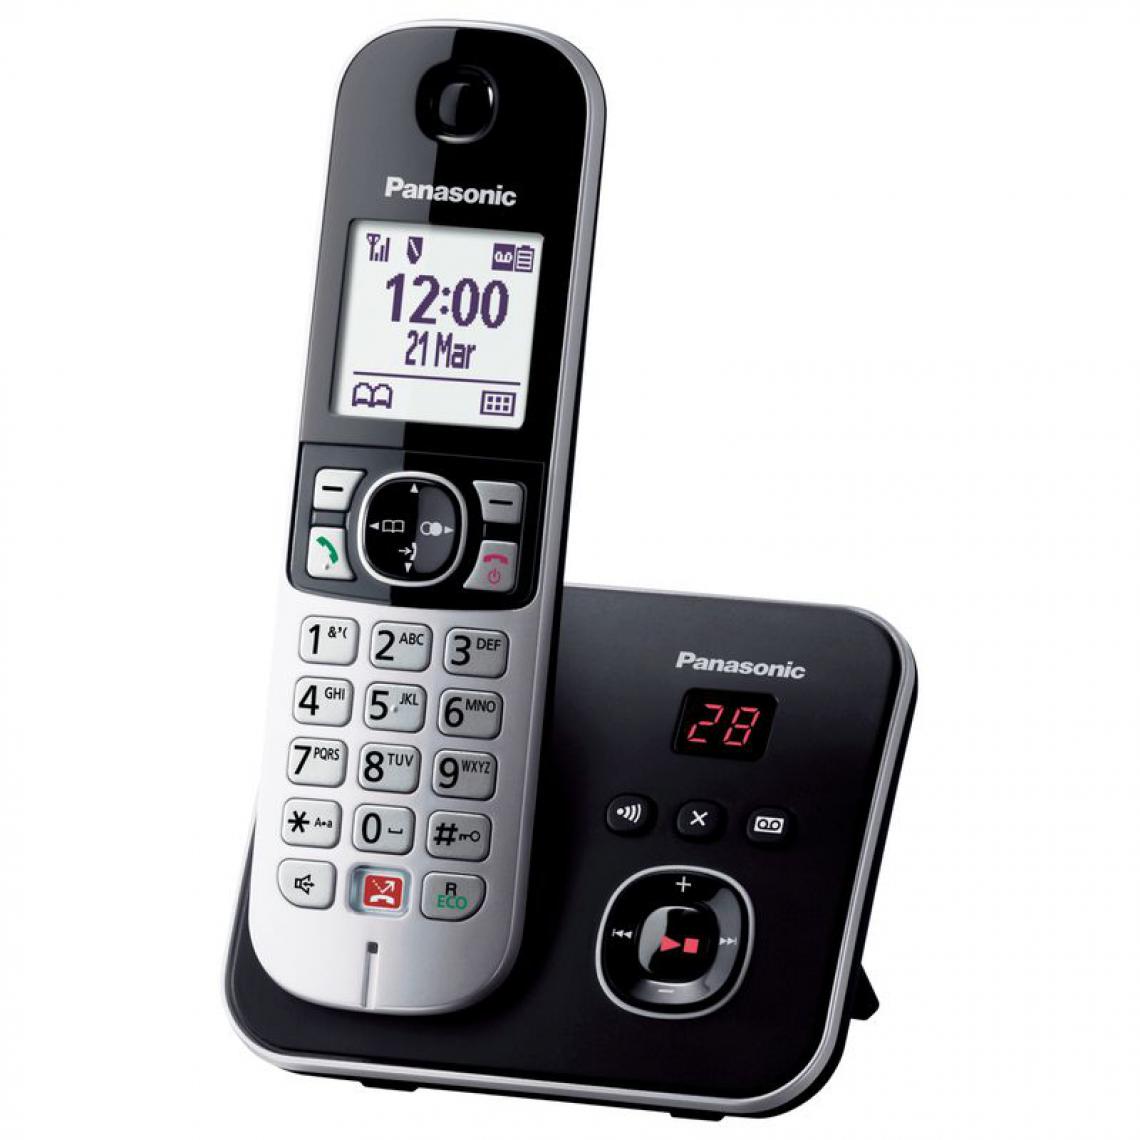 Panasonic - Rasage Electrique - Téléphone sans fil répondeur PANASONIC KX-TG6861FRB - Téléphone fixe sans fil